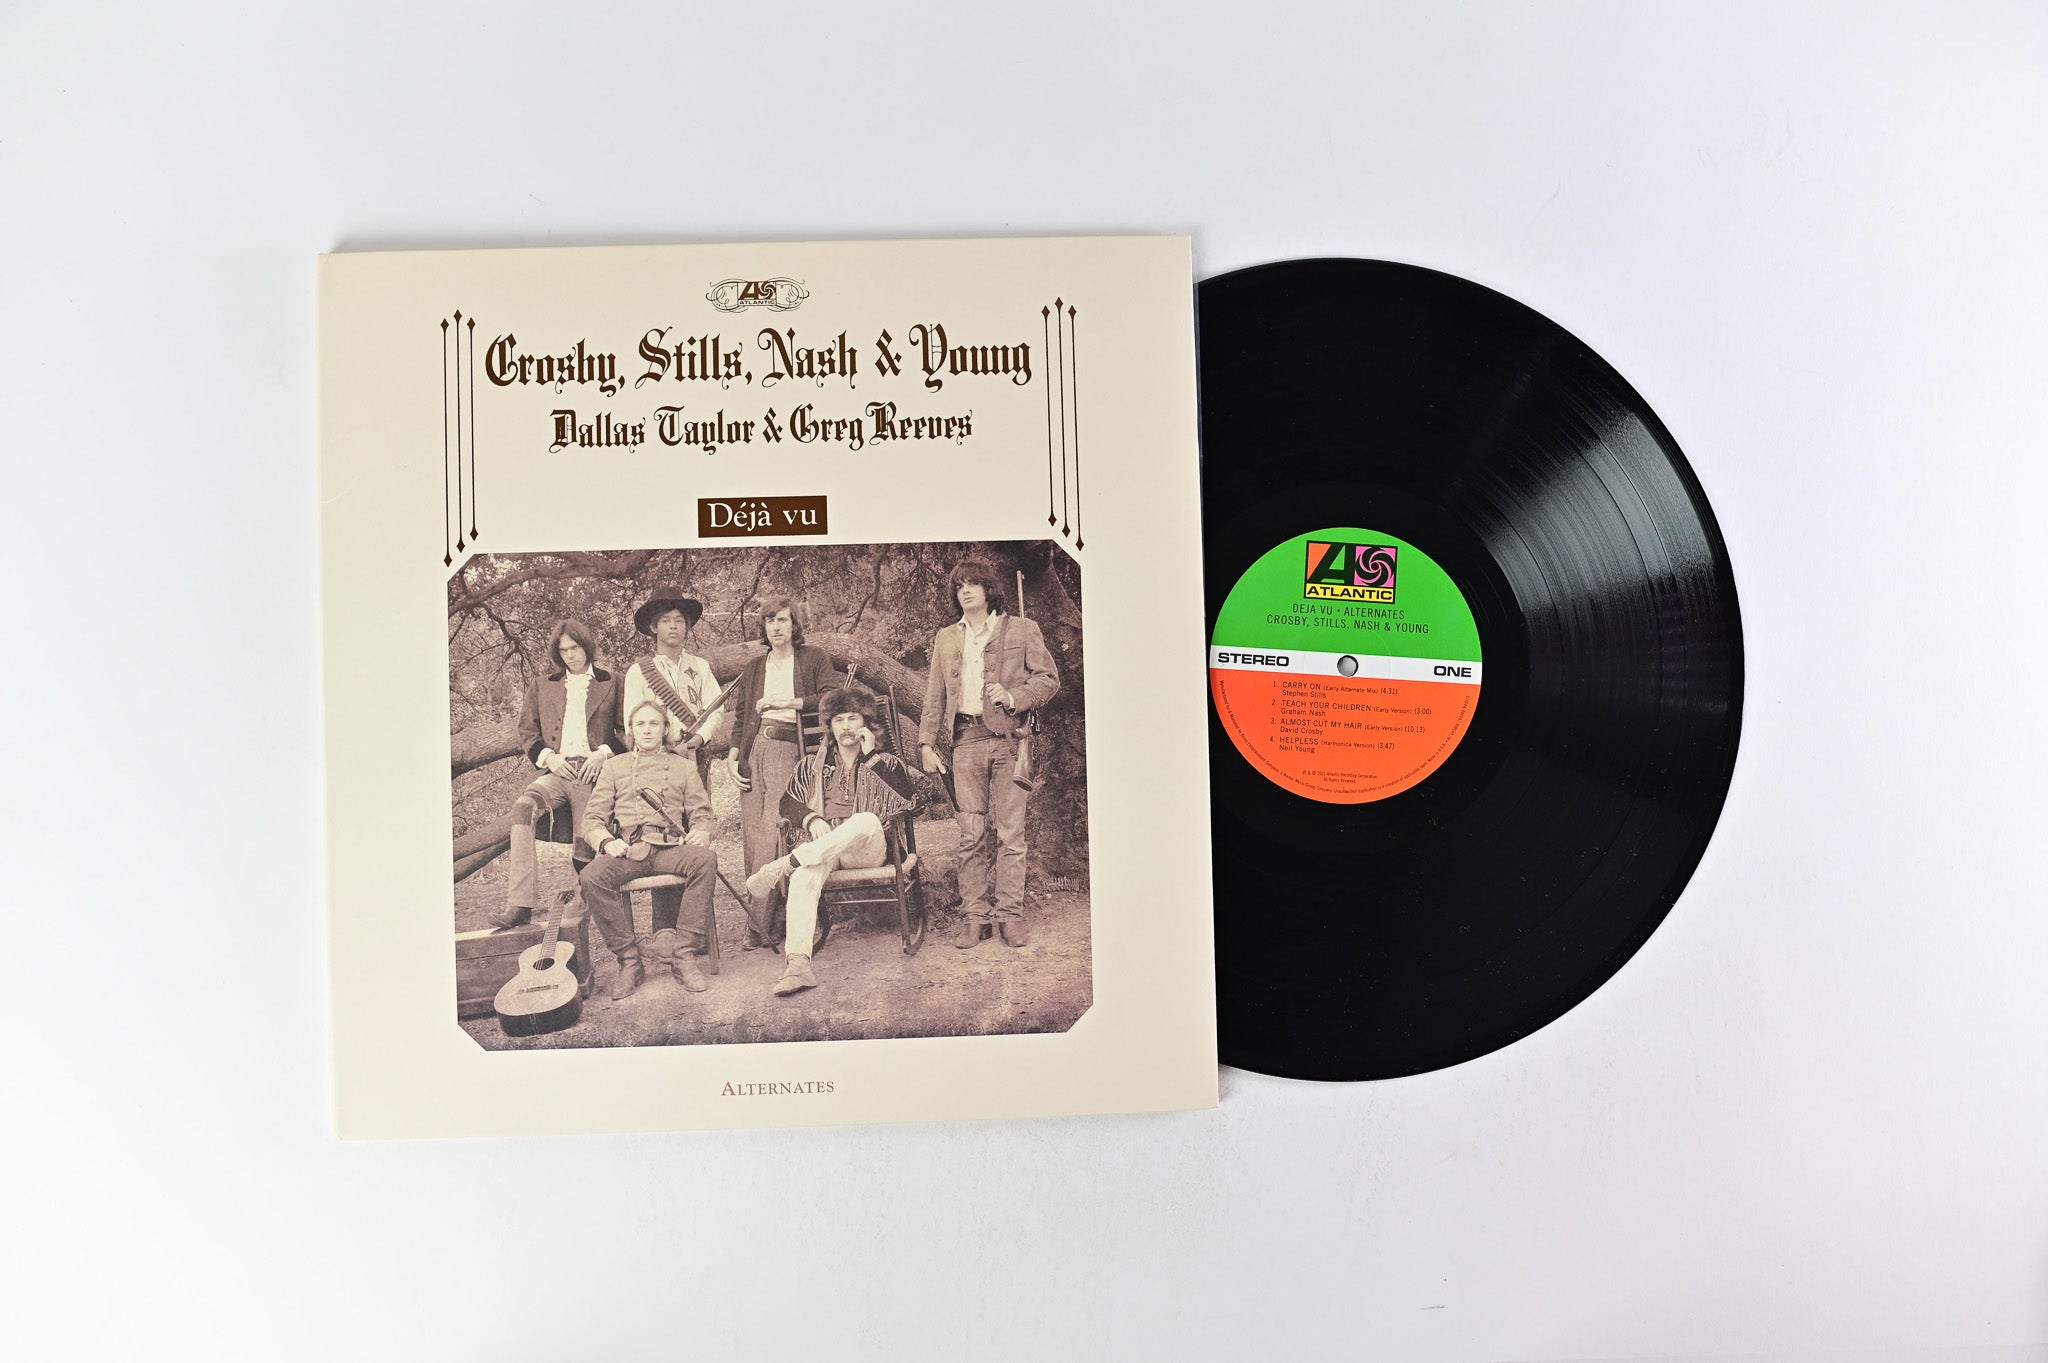 Crosby, Stills, Nash & Young - Déjà Vu (Alternates) on Atlantic/Rhino Records RSD Edition